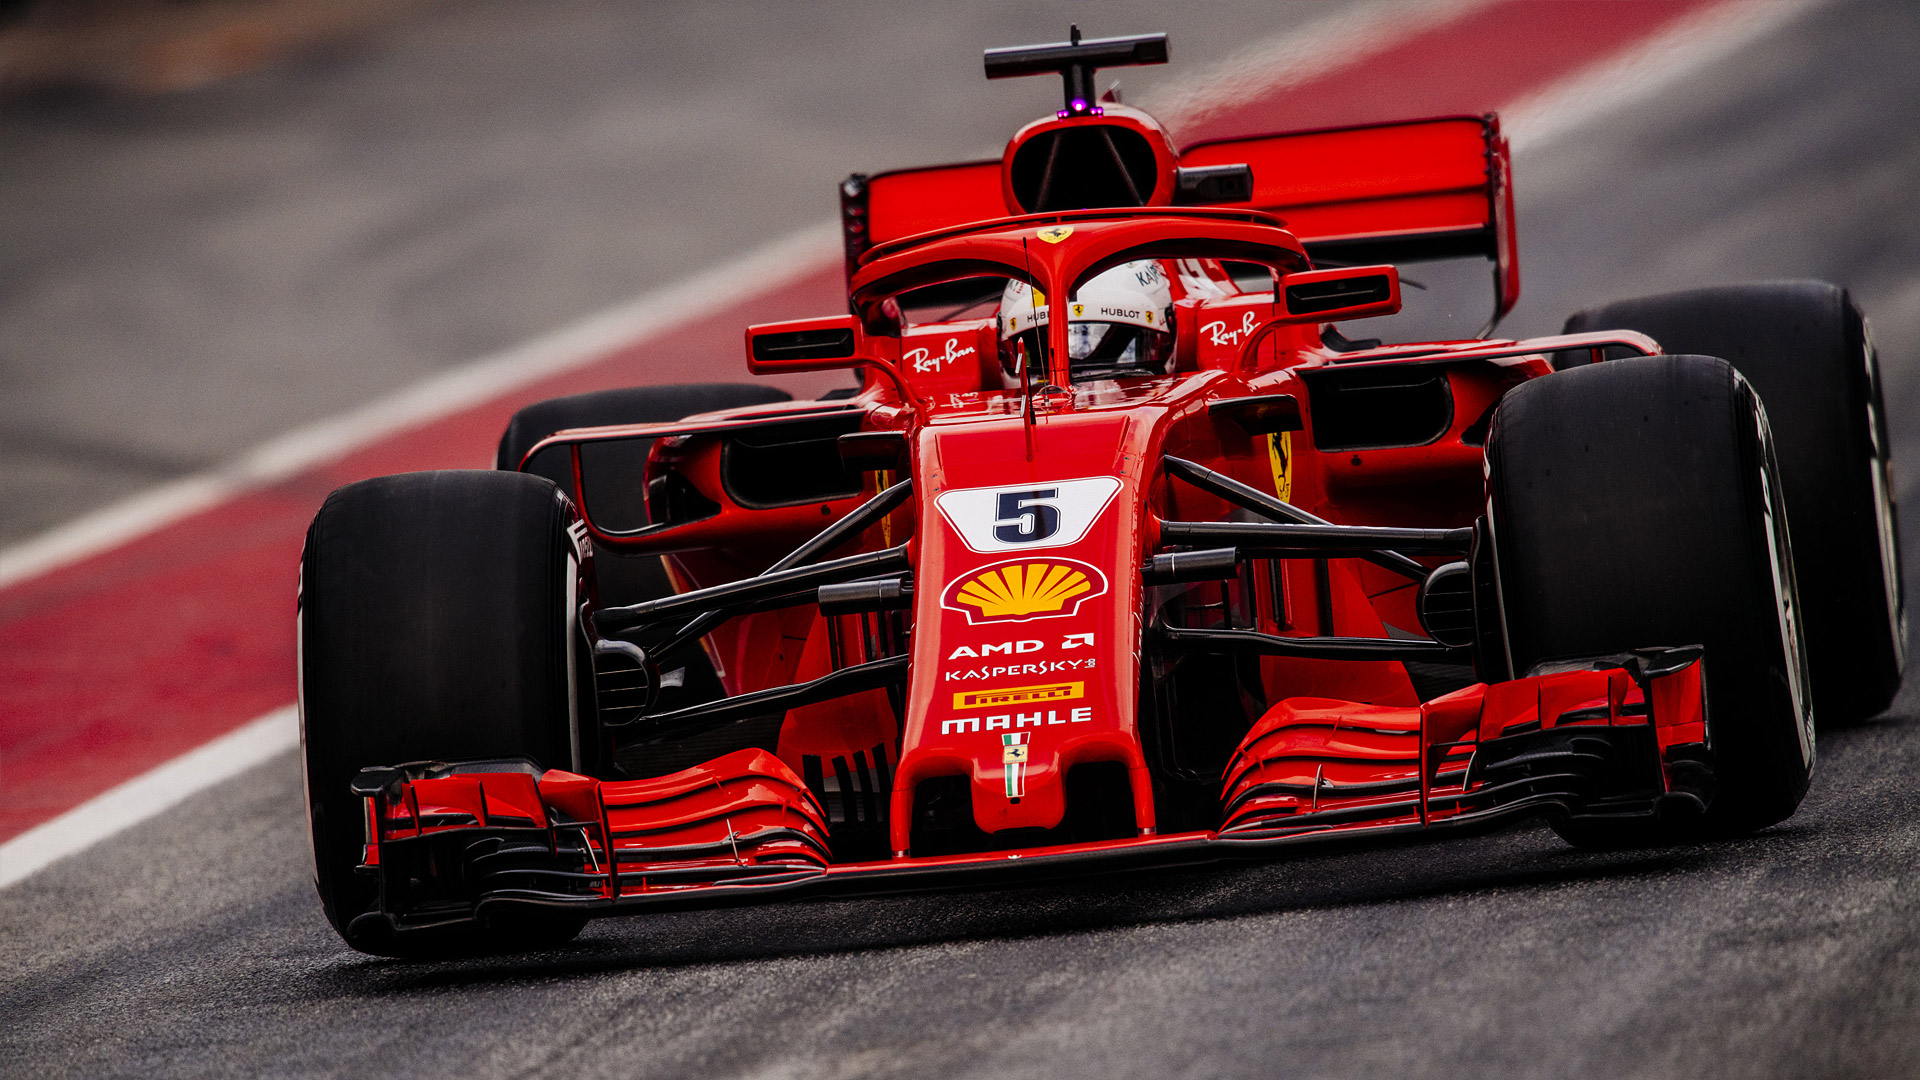 [25+] Ferrari F1 Wallpapers | WallpaperSafari.com